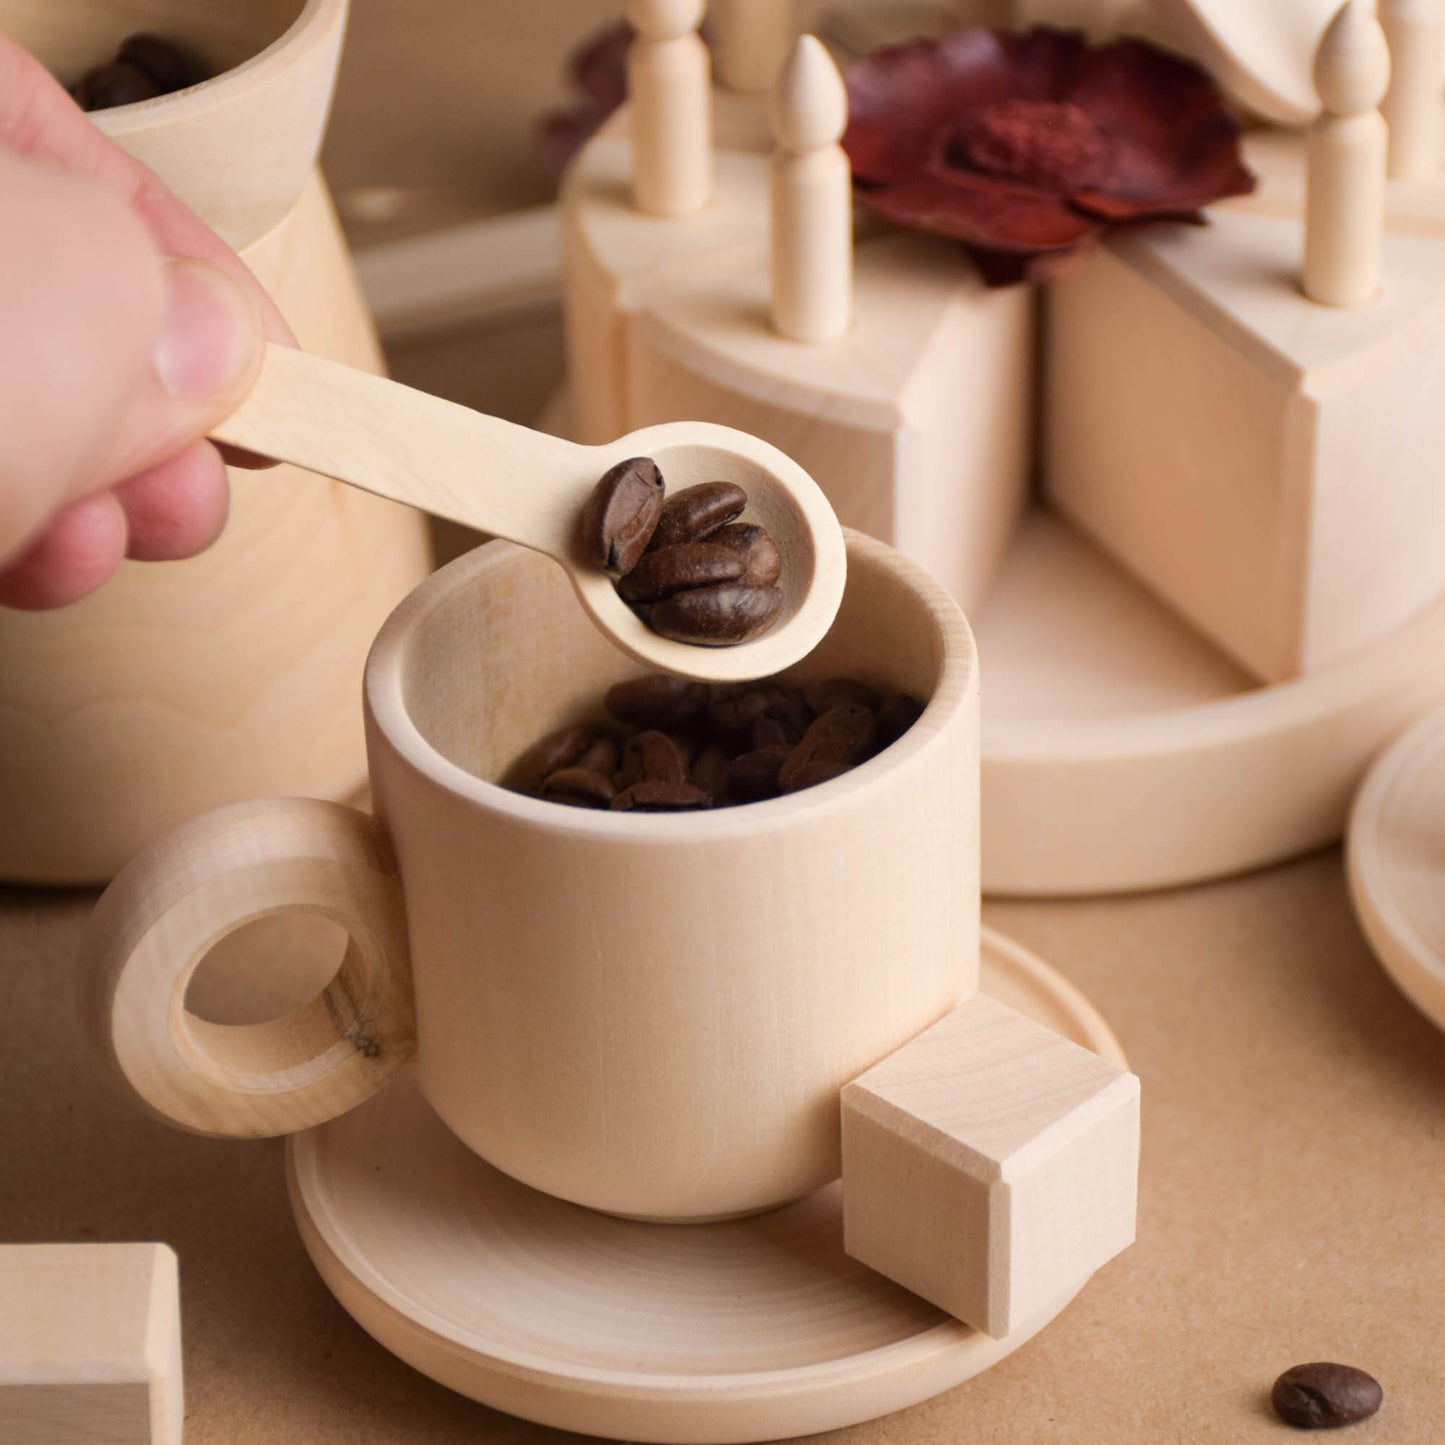 Wooden Tea Set for Kids